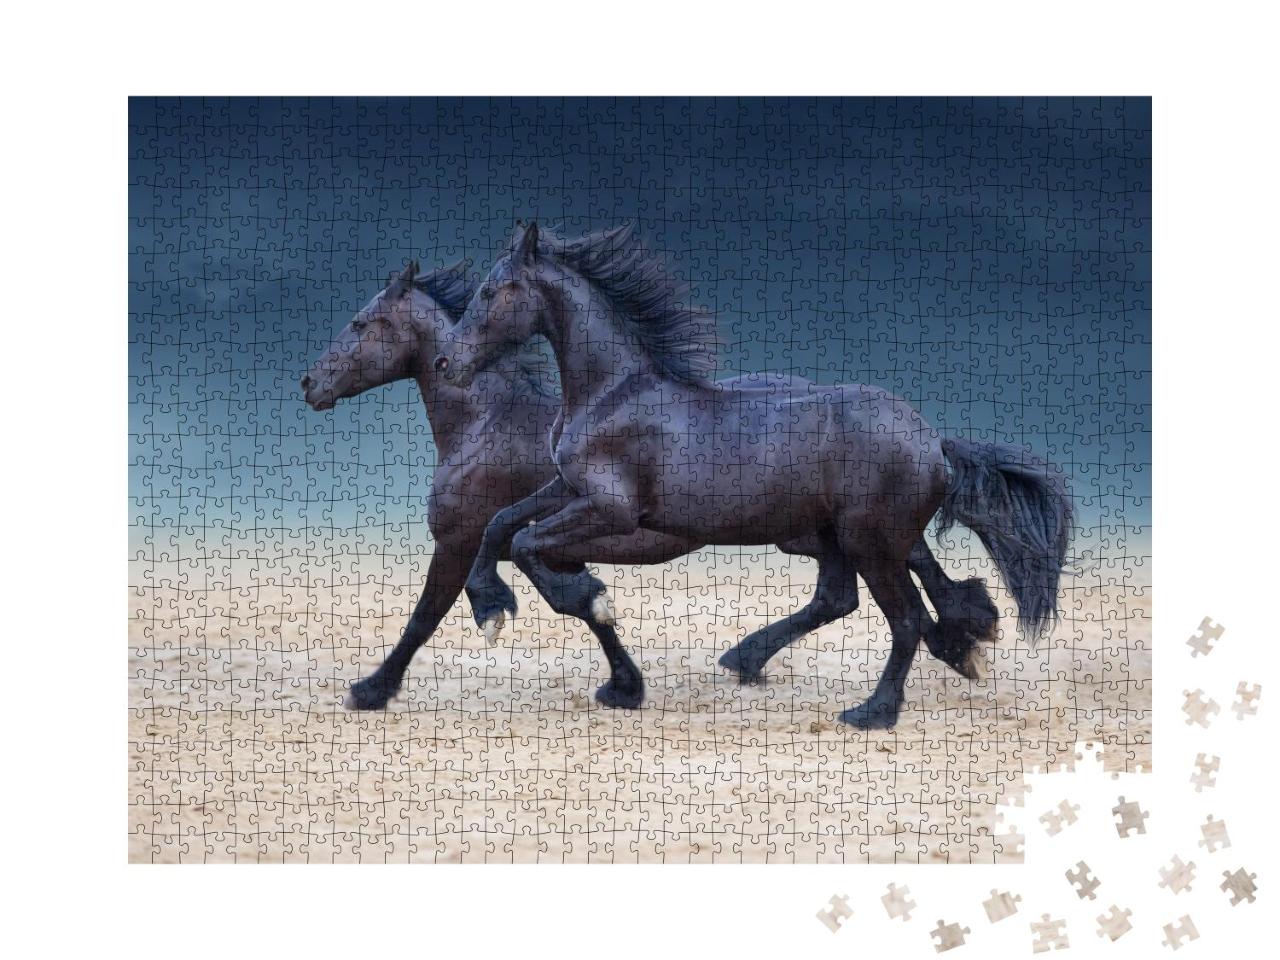 Puzzle 1000 Teile „Friesische Pferde im Galopp durch den Wüstenstaub“